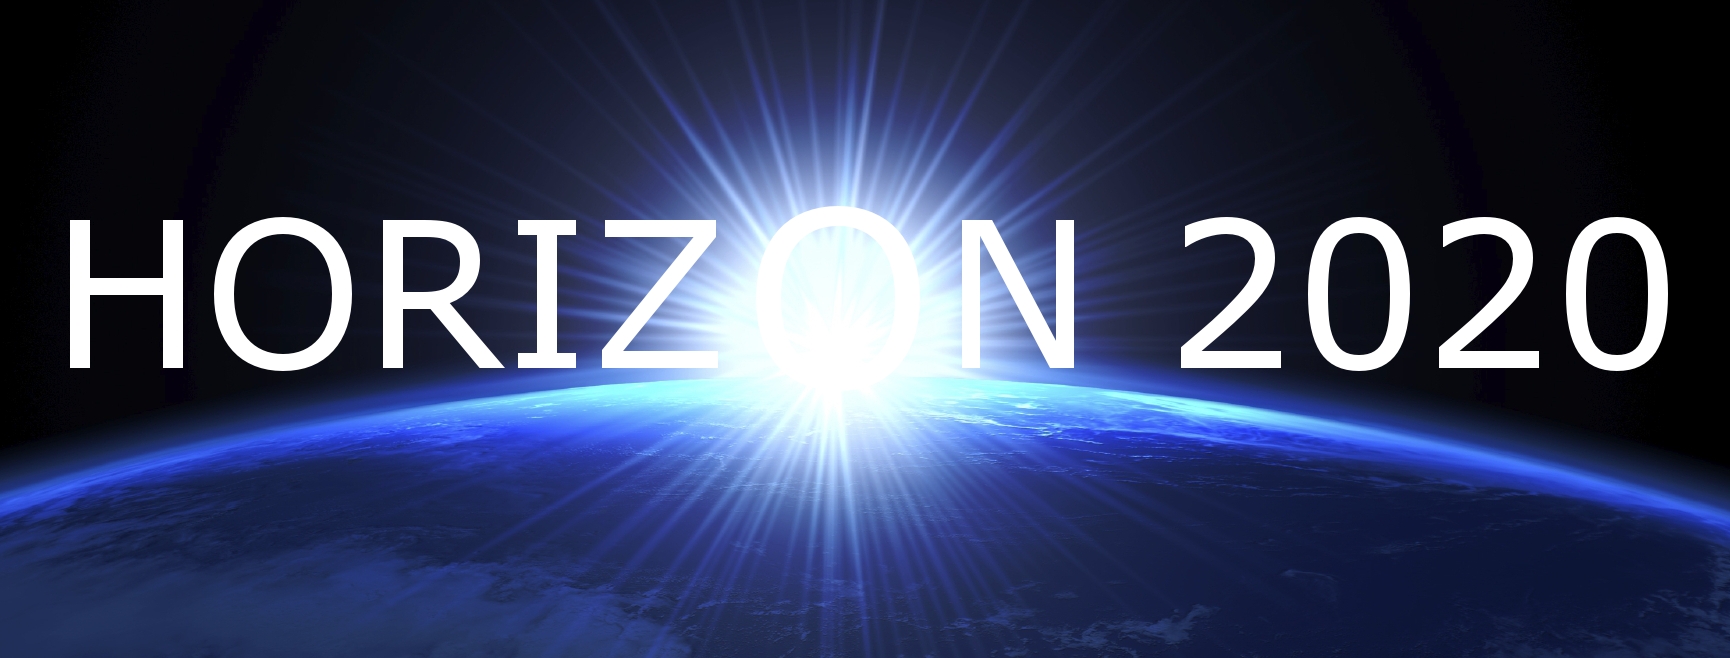 Horizon2020 header